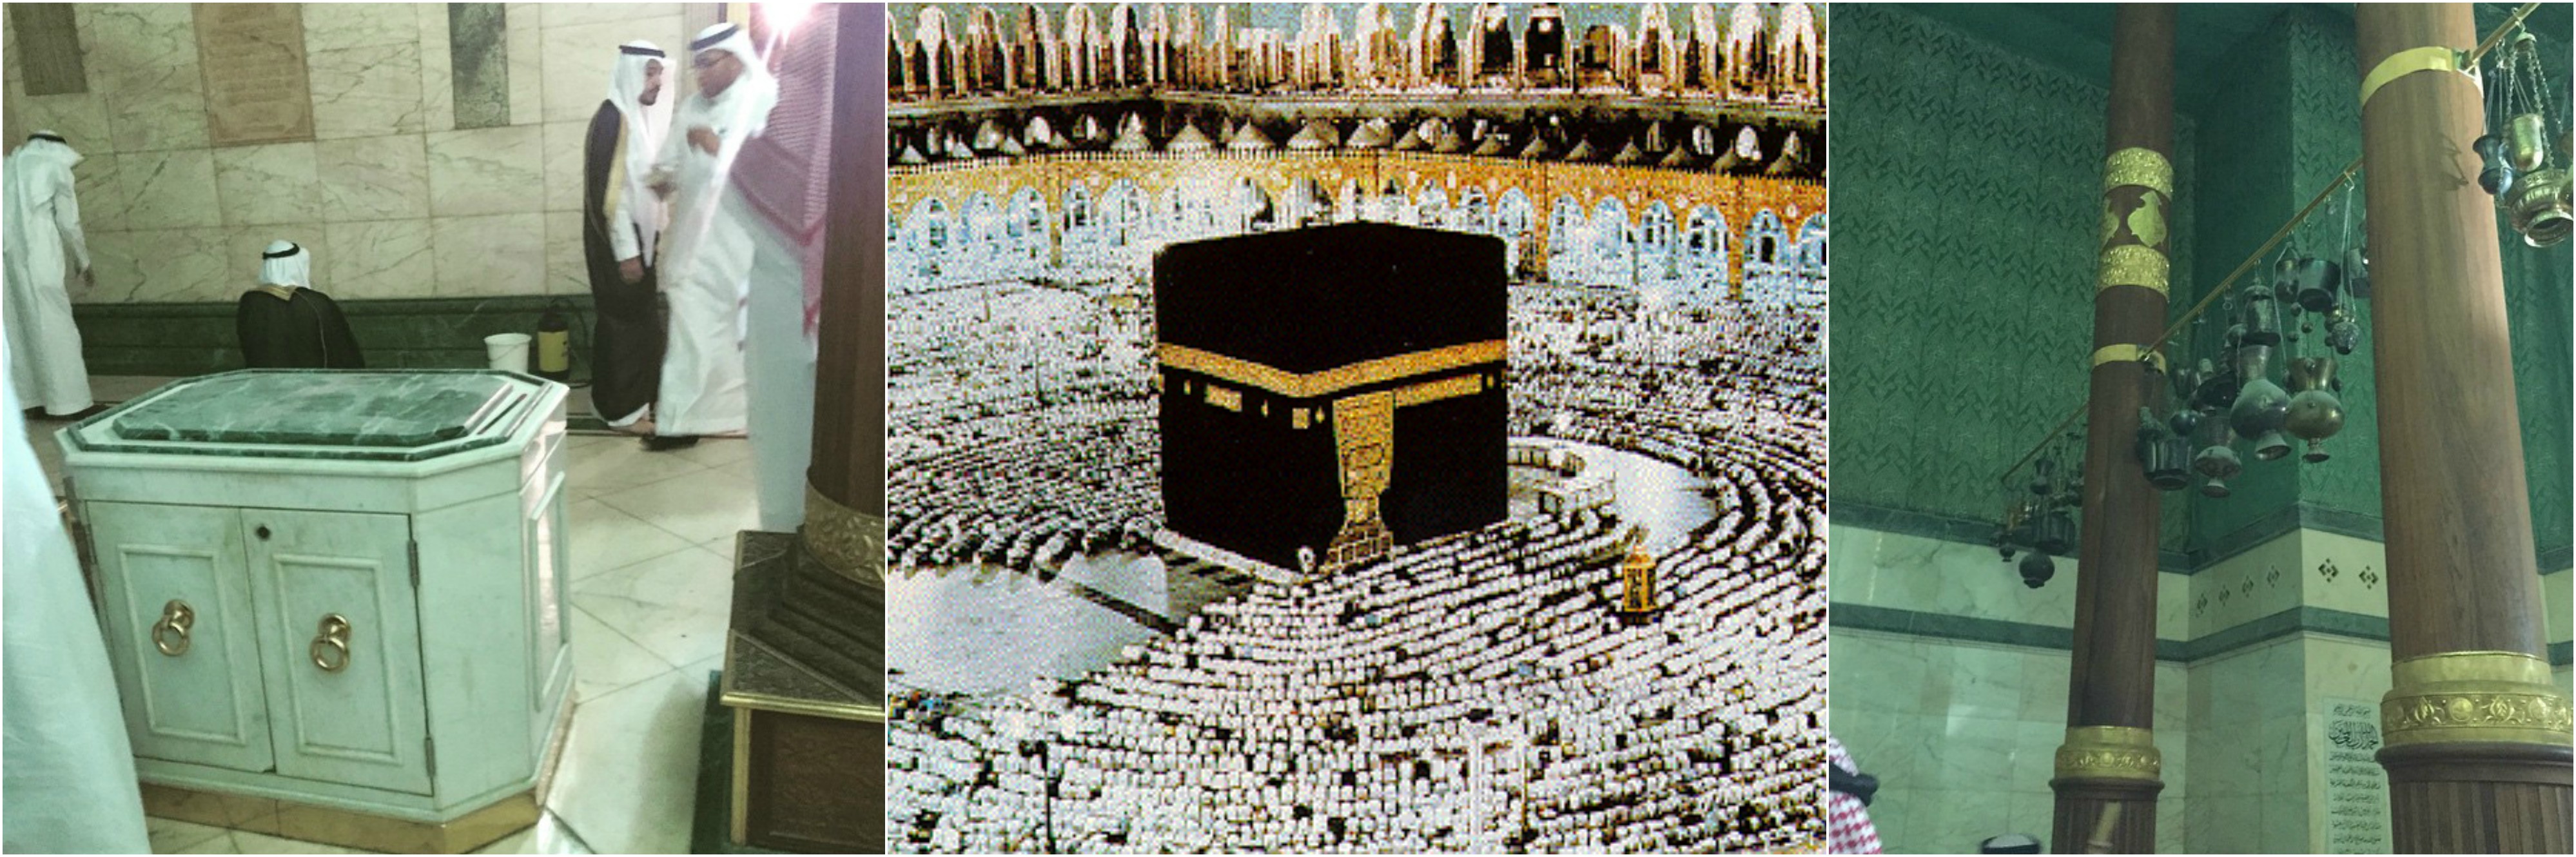  Inside  Image Of Kaaba 